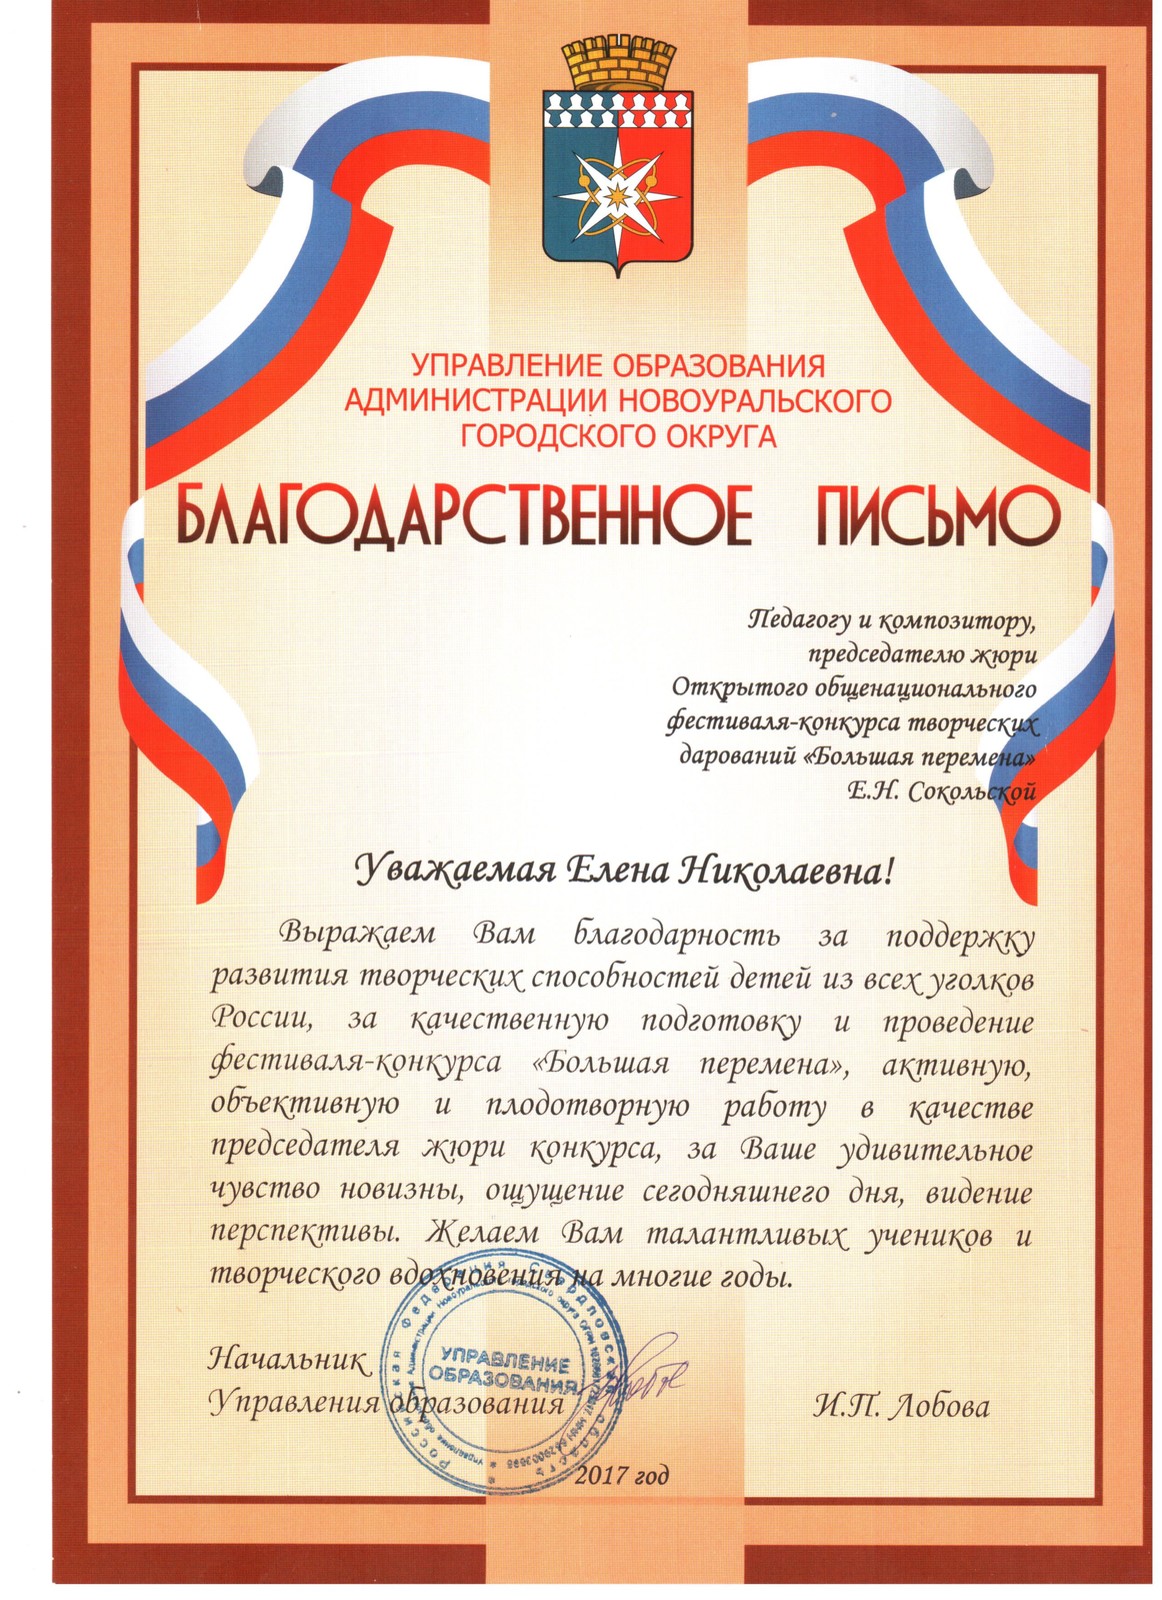 Благодарственное письмо от Управления Образовани Администрации Новоуральского городского округа